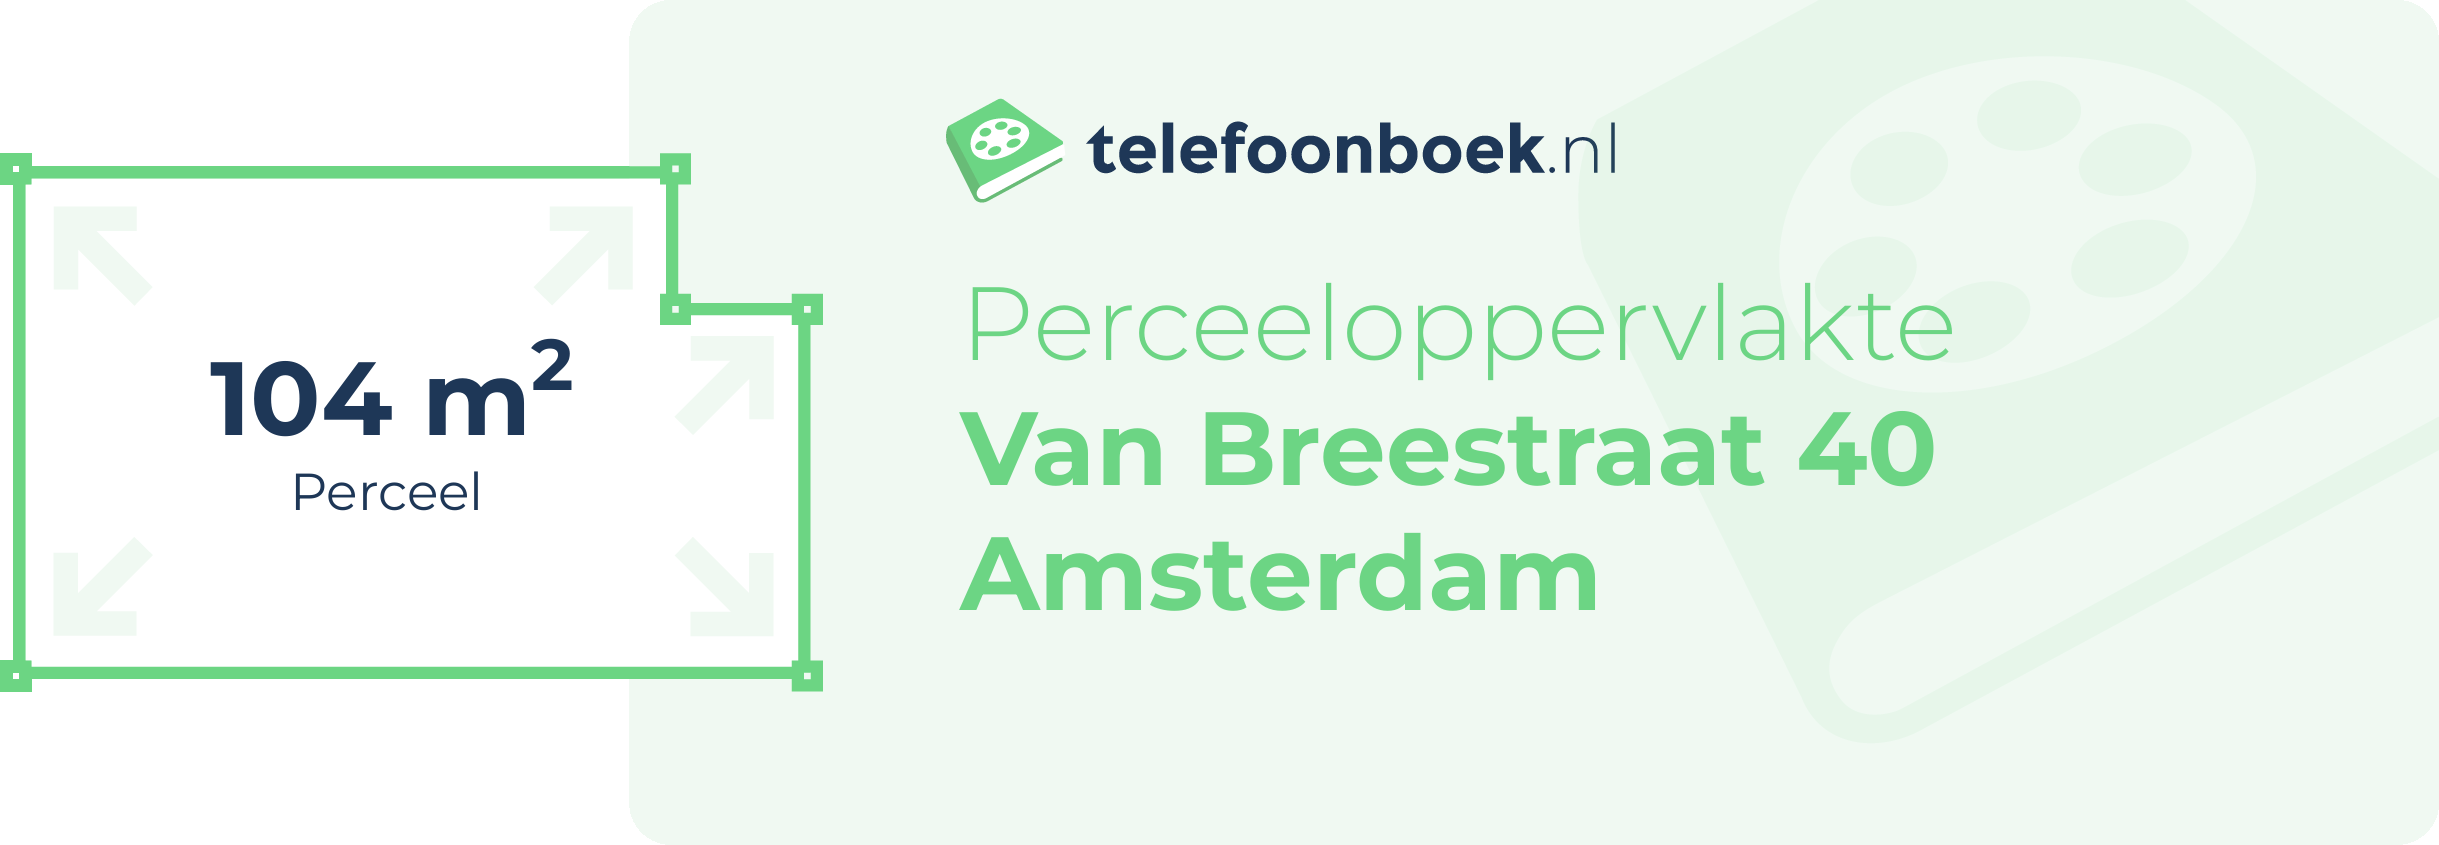 Perceeloppervlakte Van Breestraat 40 Amsterdam